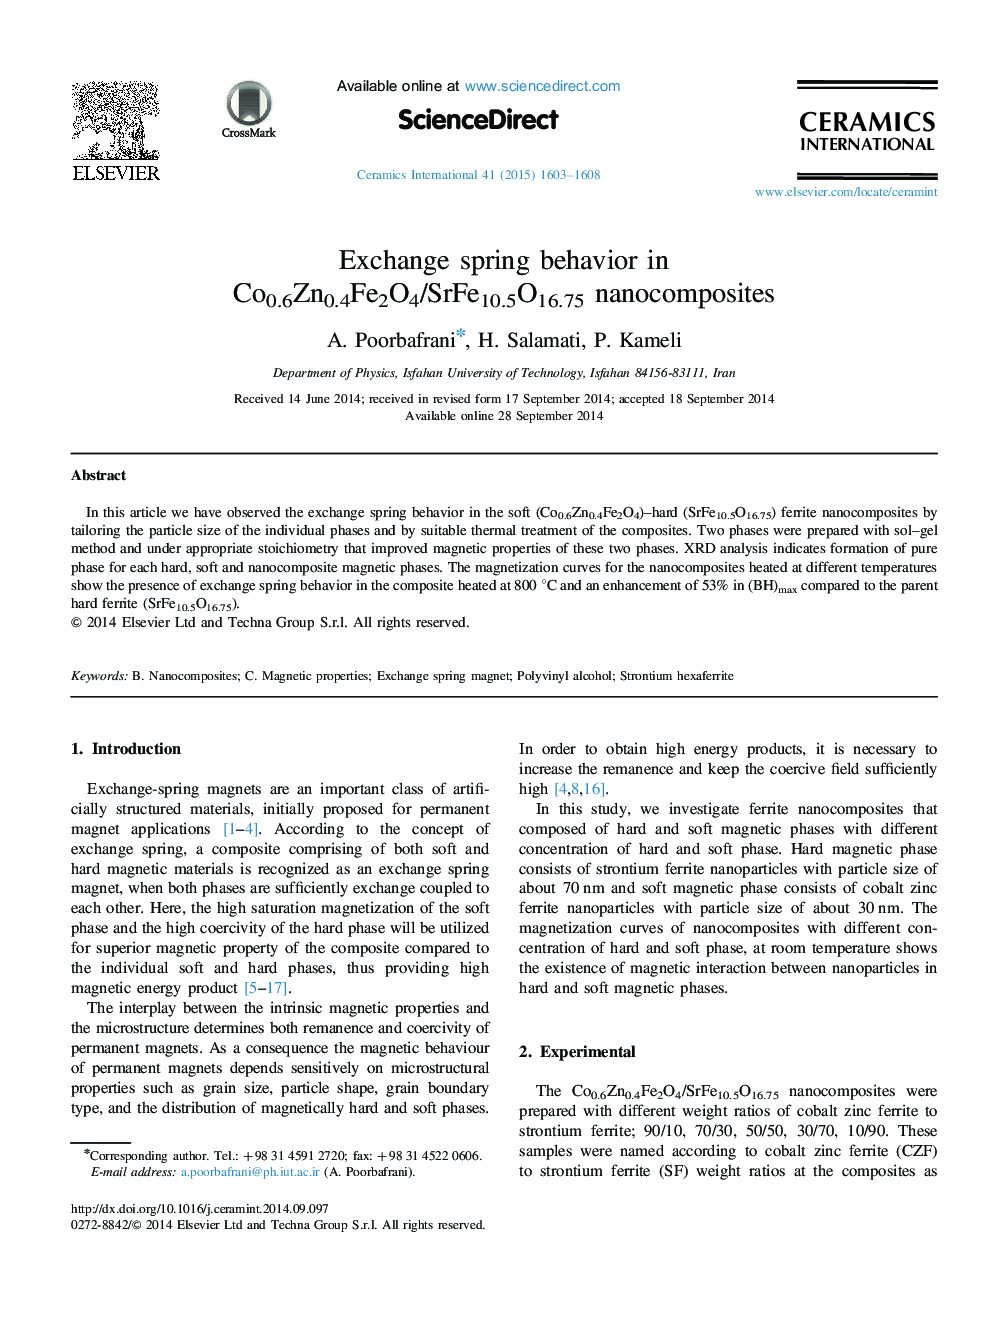 Exchange spring behavior in Co0.6Zn0.4Fe2O4/SrFe10.5O16.75 nanocomposites